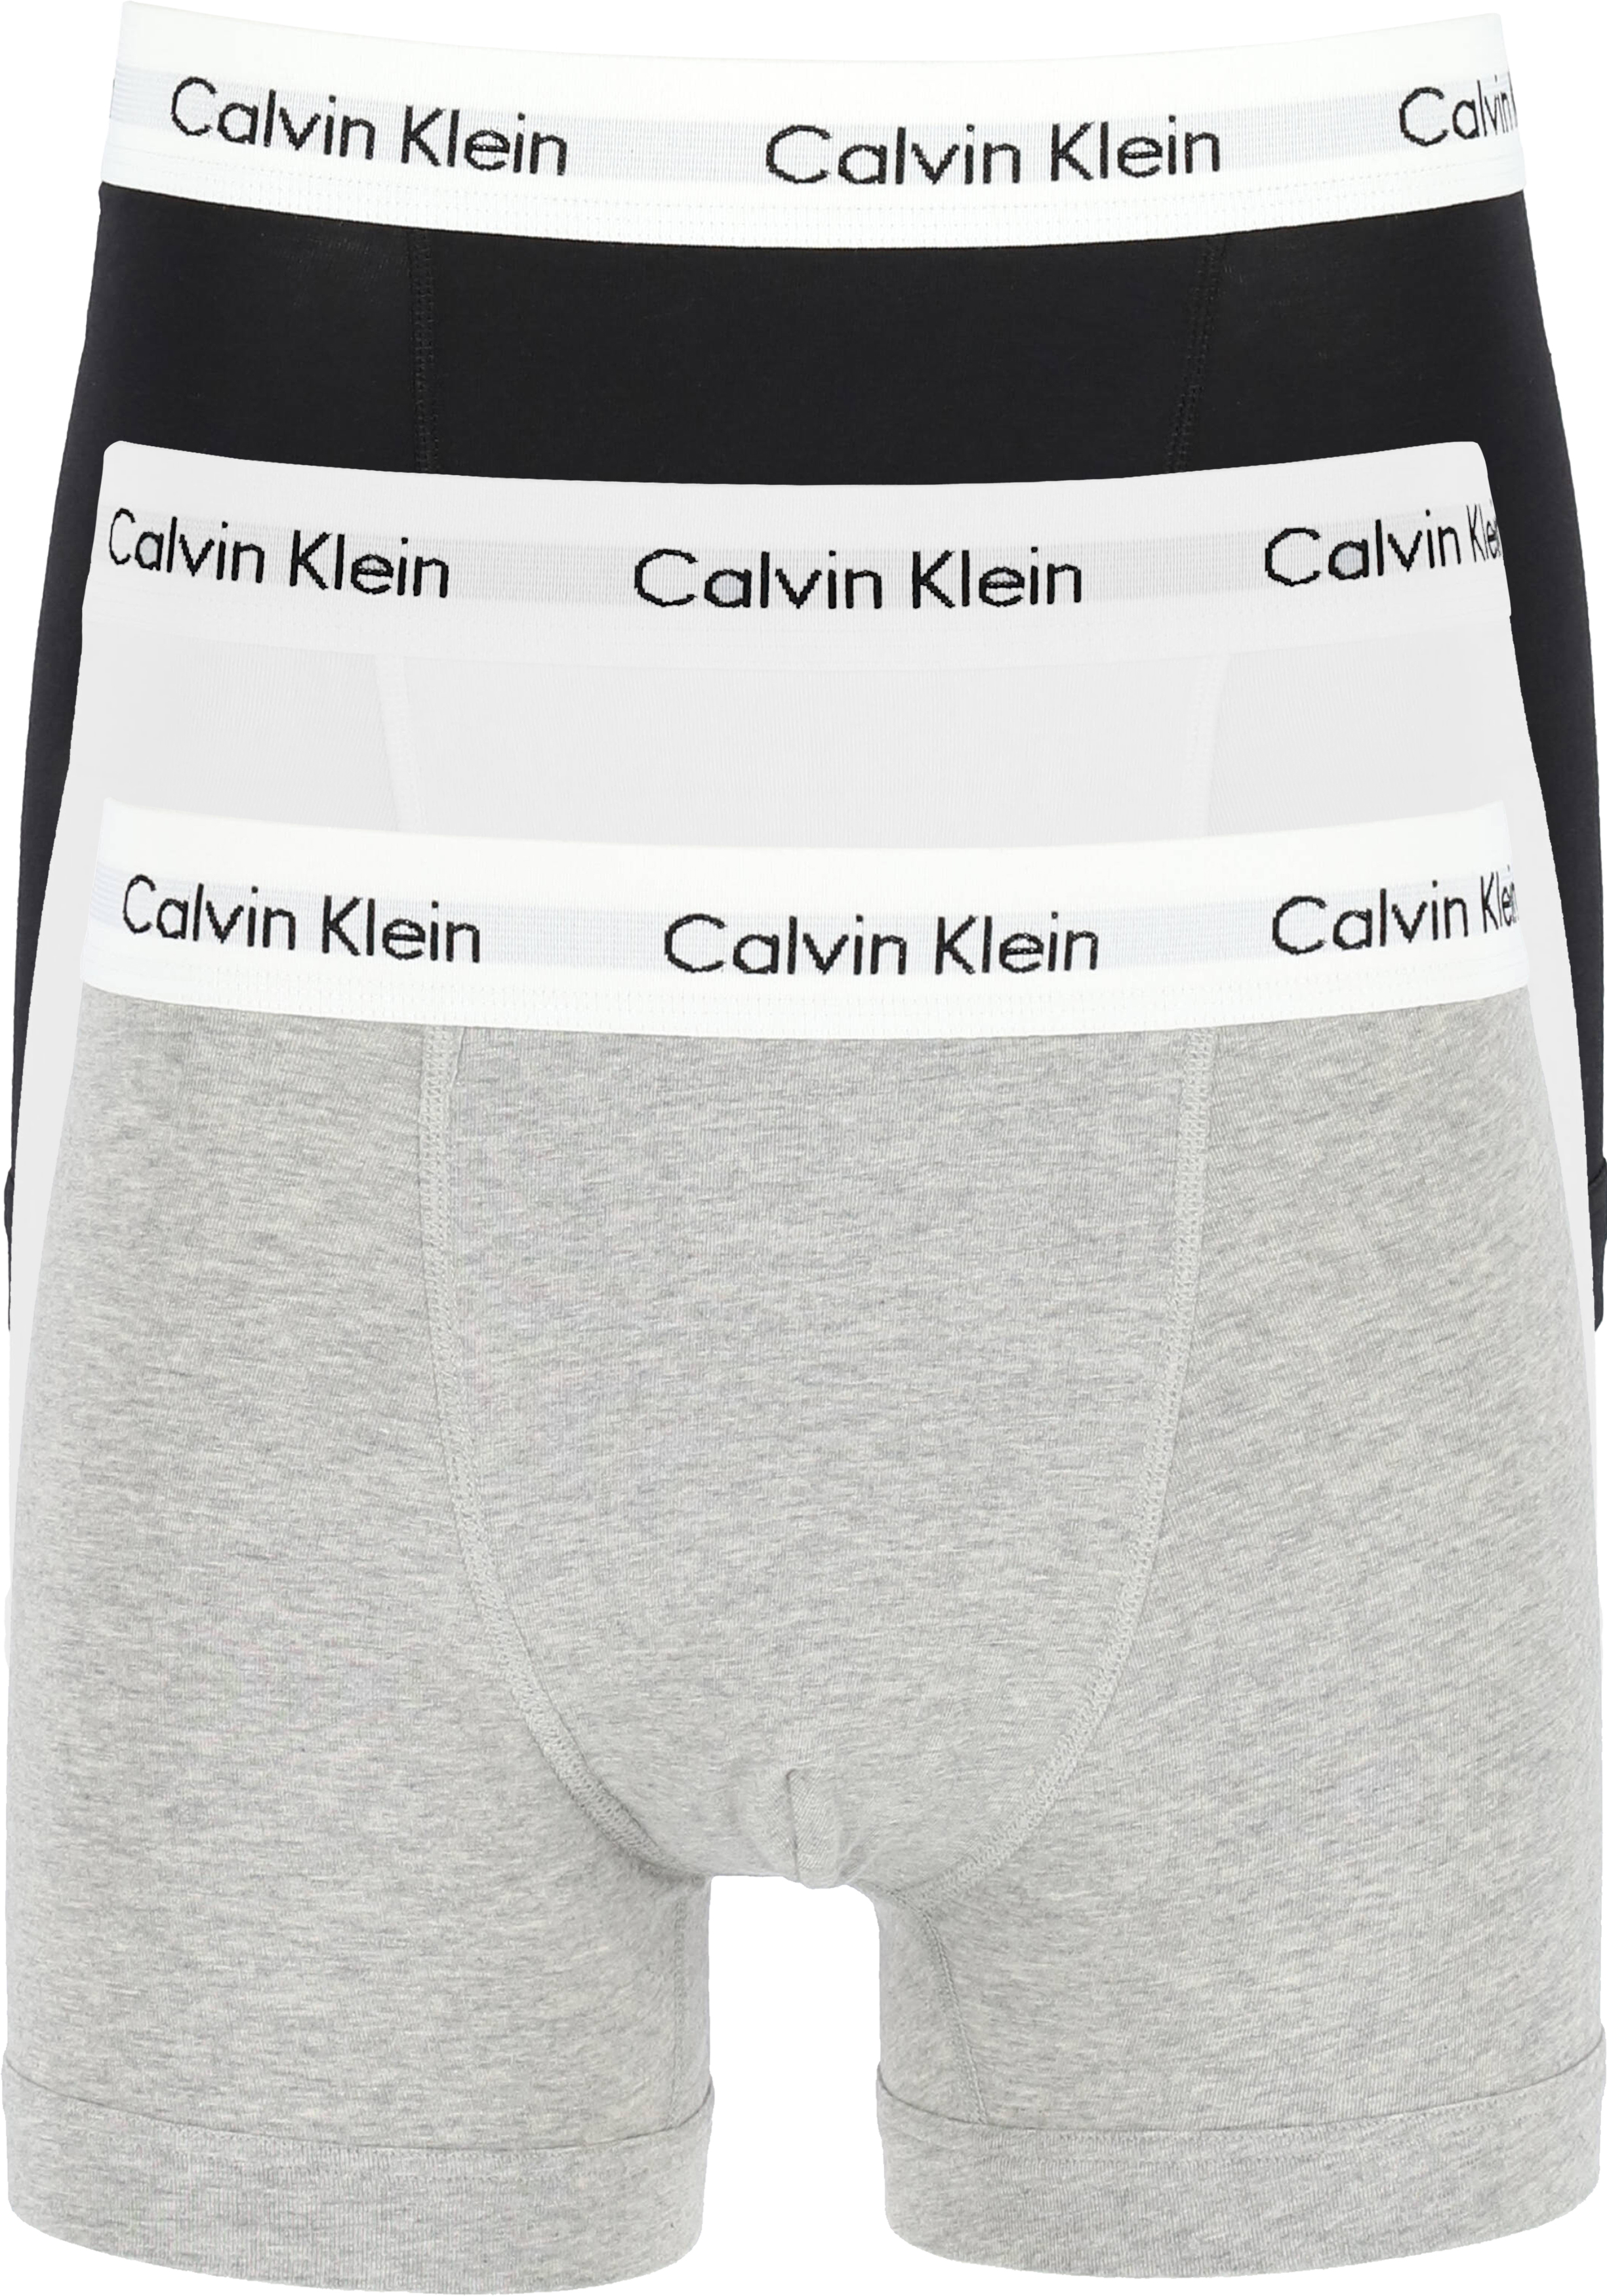 Staan voor oppervlakkig tiran Calvin Klein Trunks (3-pack), zwart - grijs en wit - Gratis bezorgd